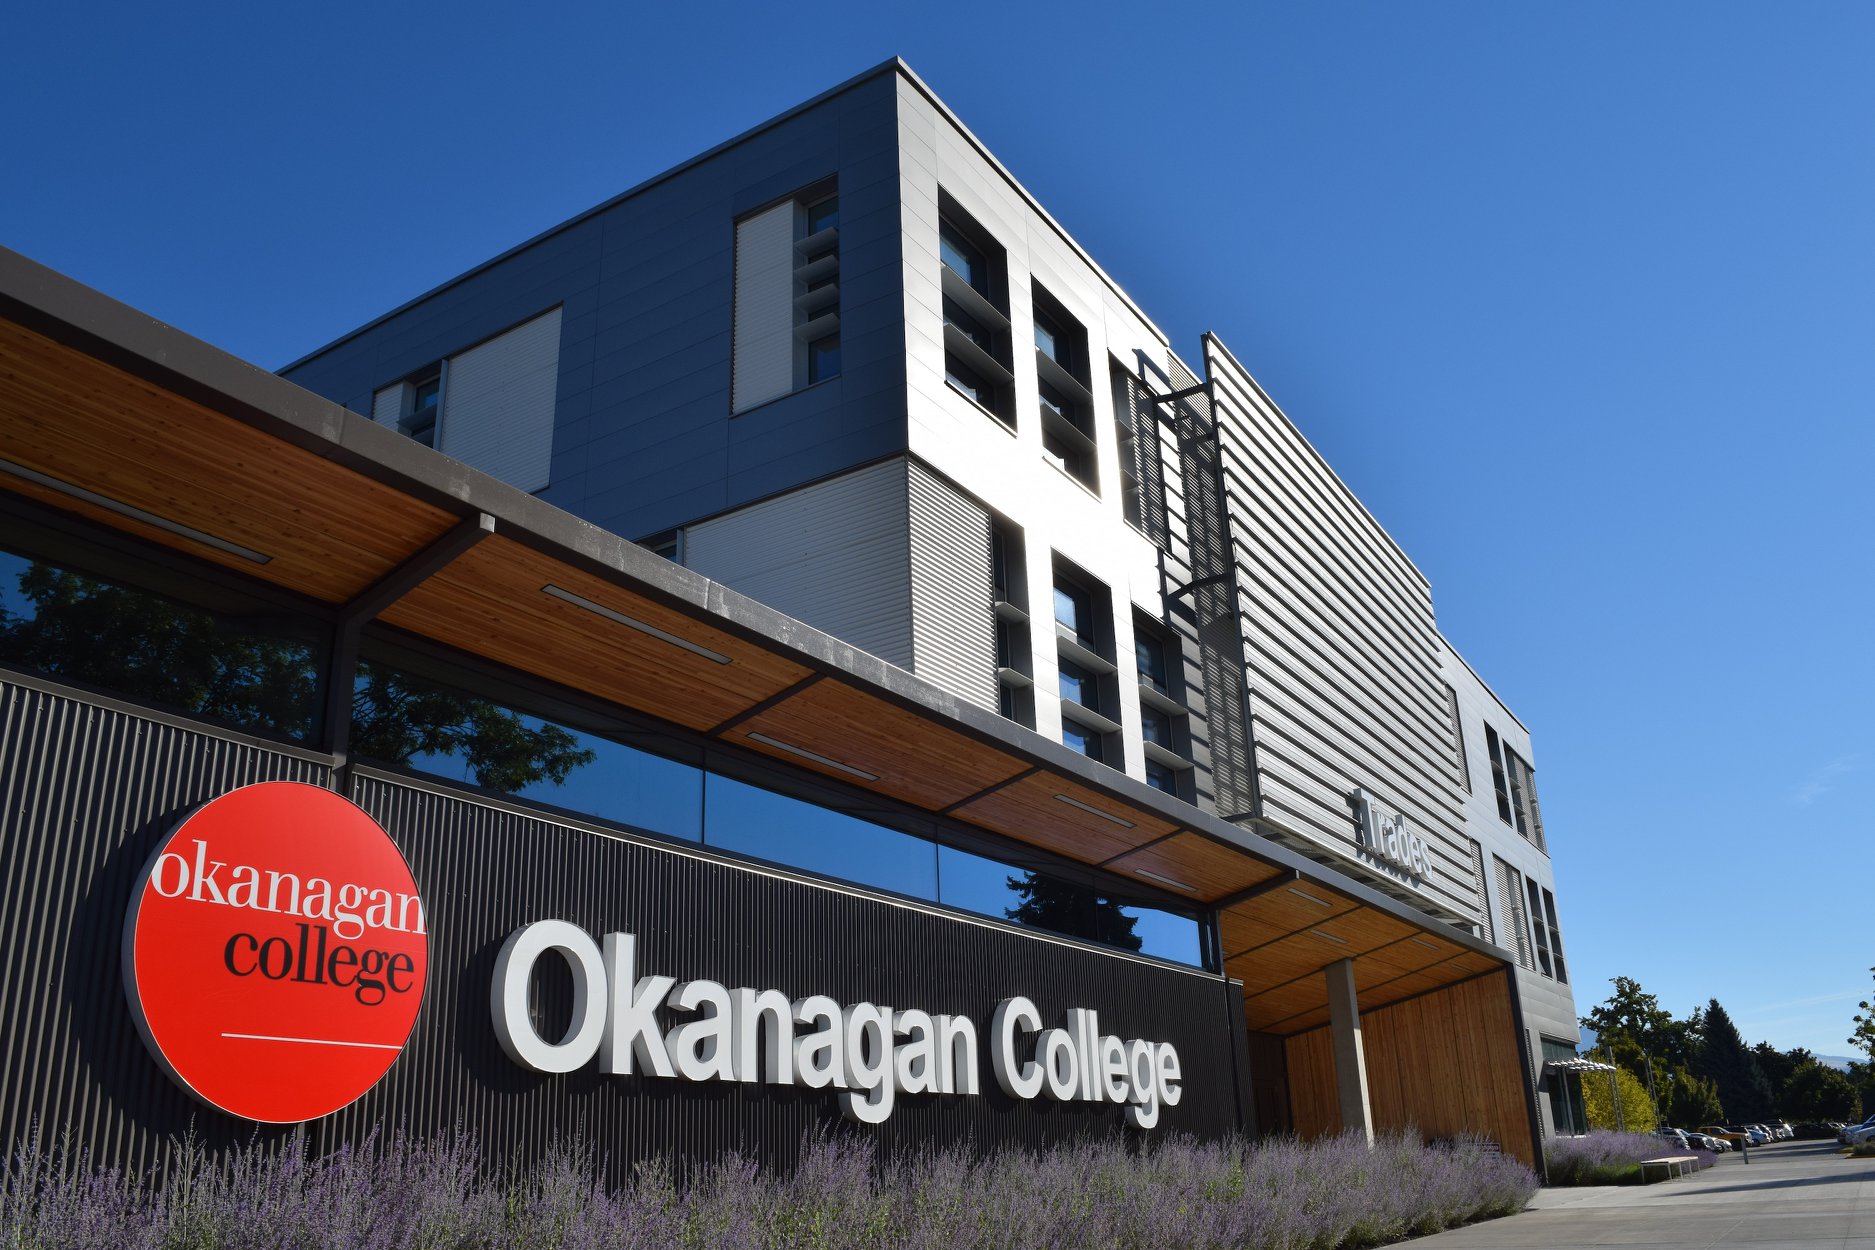 كلية أوكاناجان – Okanagan College